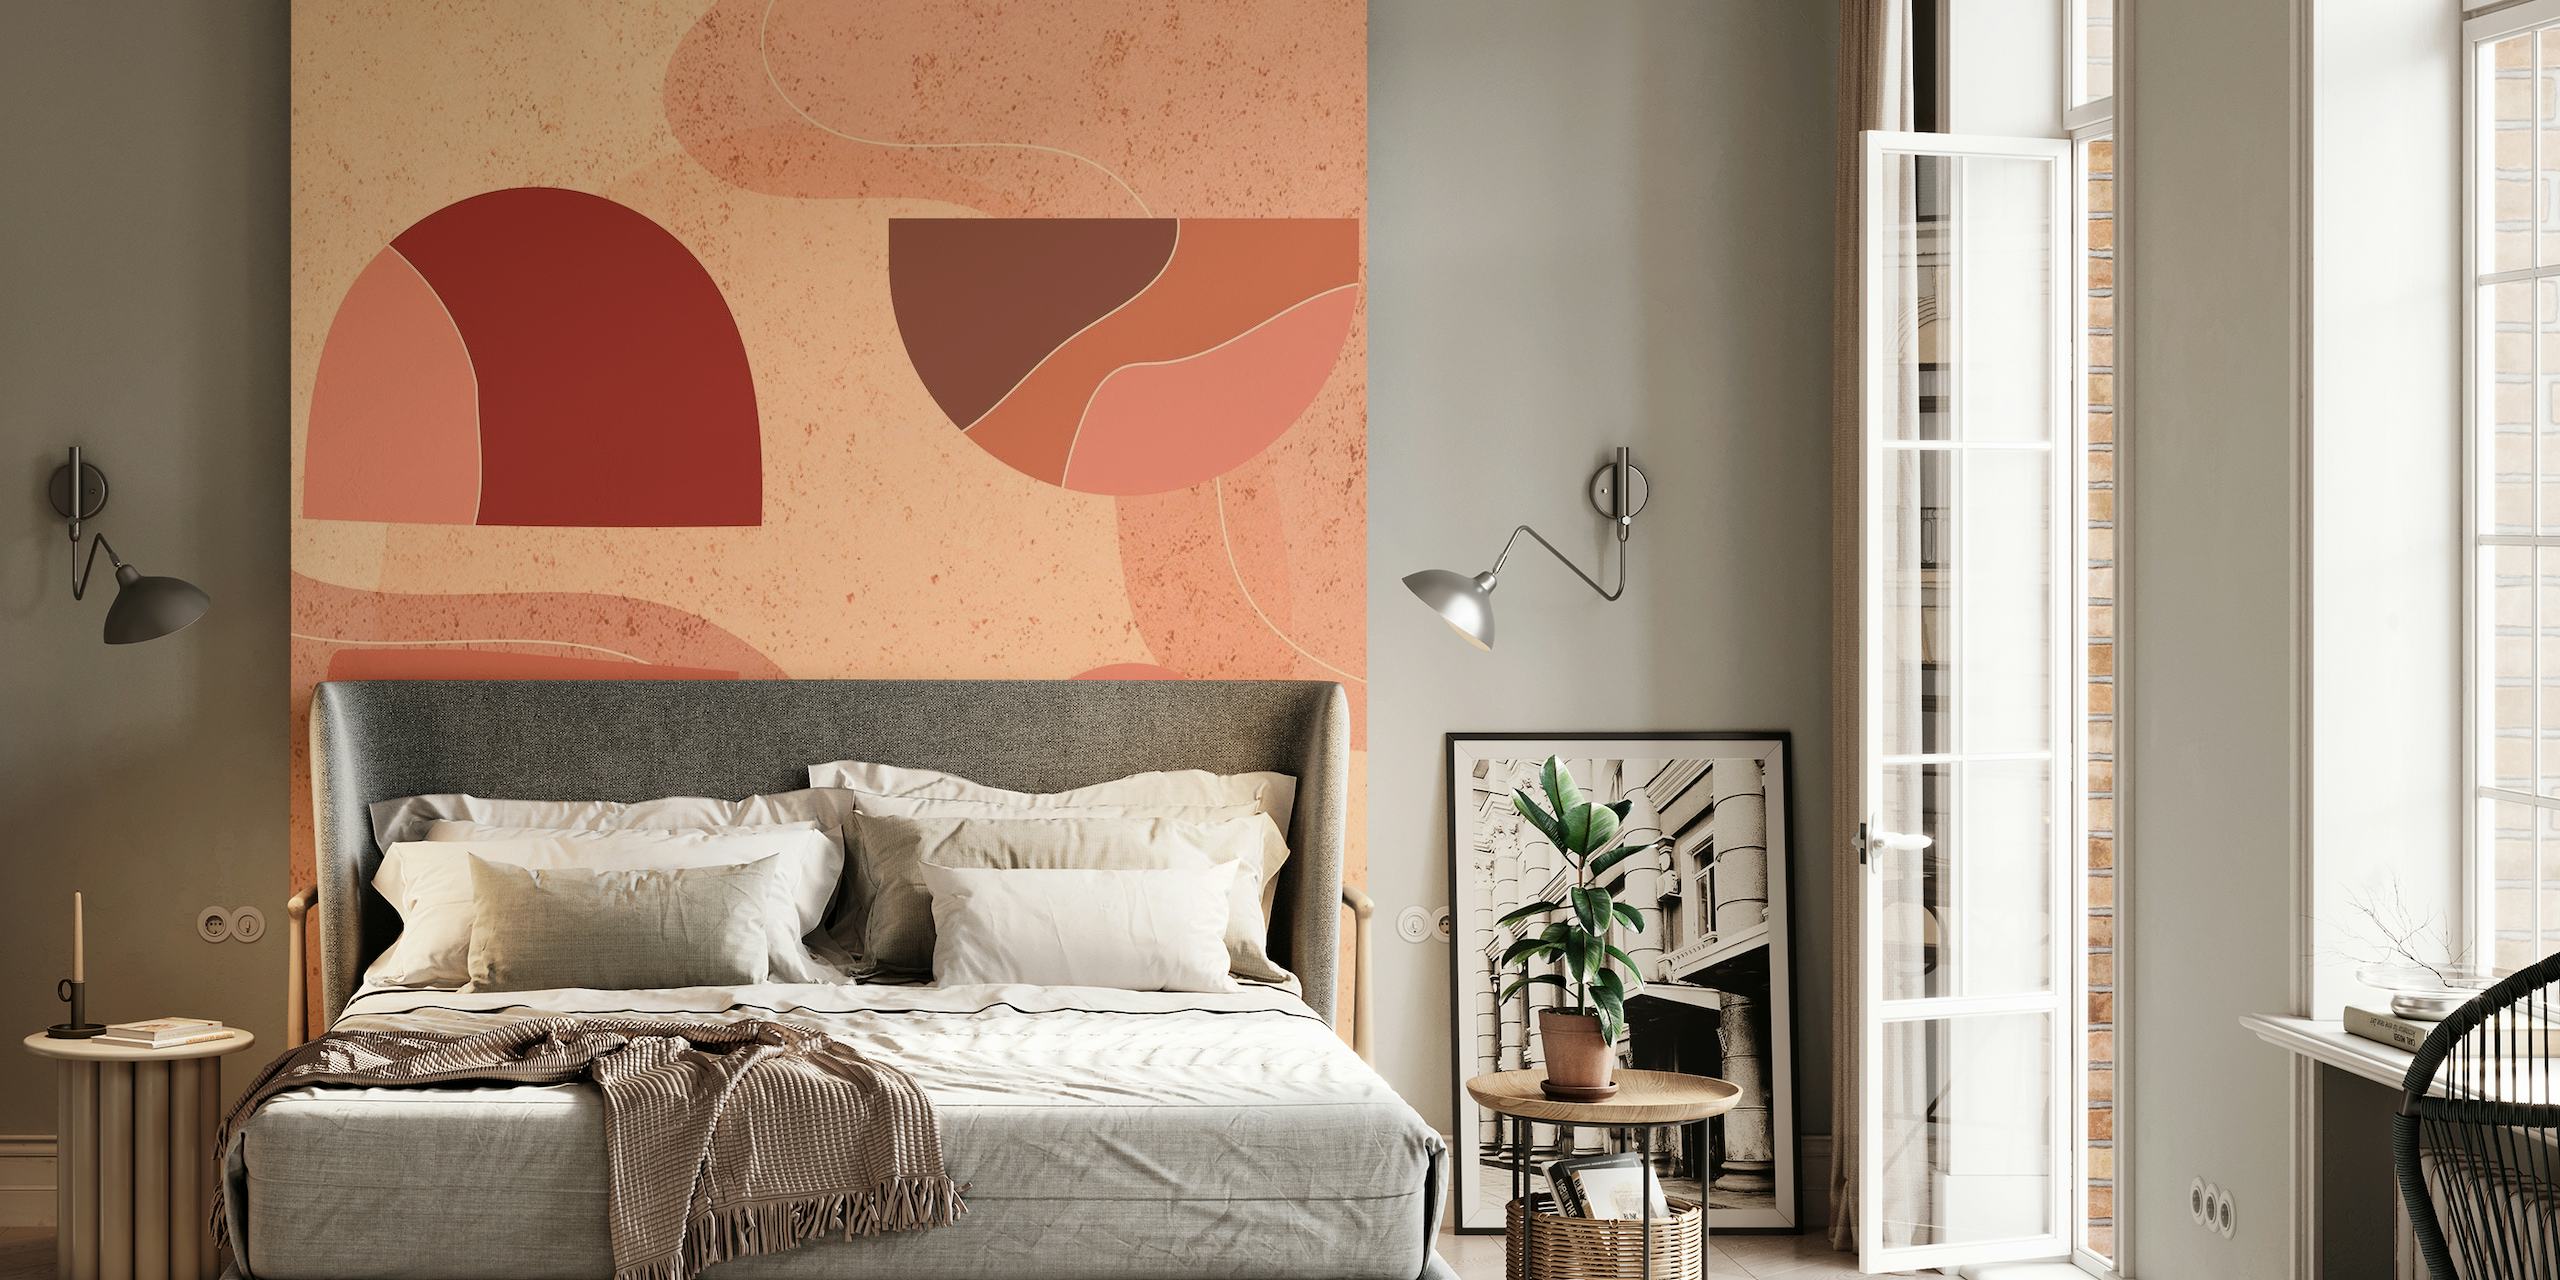 Abstrakt vægmaleri med terracotta, beige og brune former på en varm baggrund